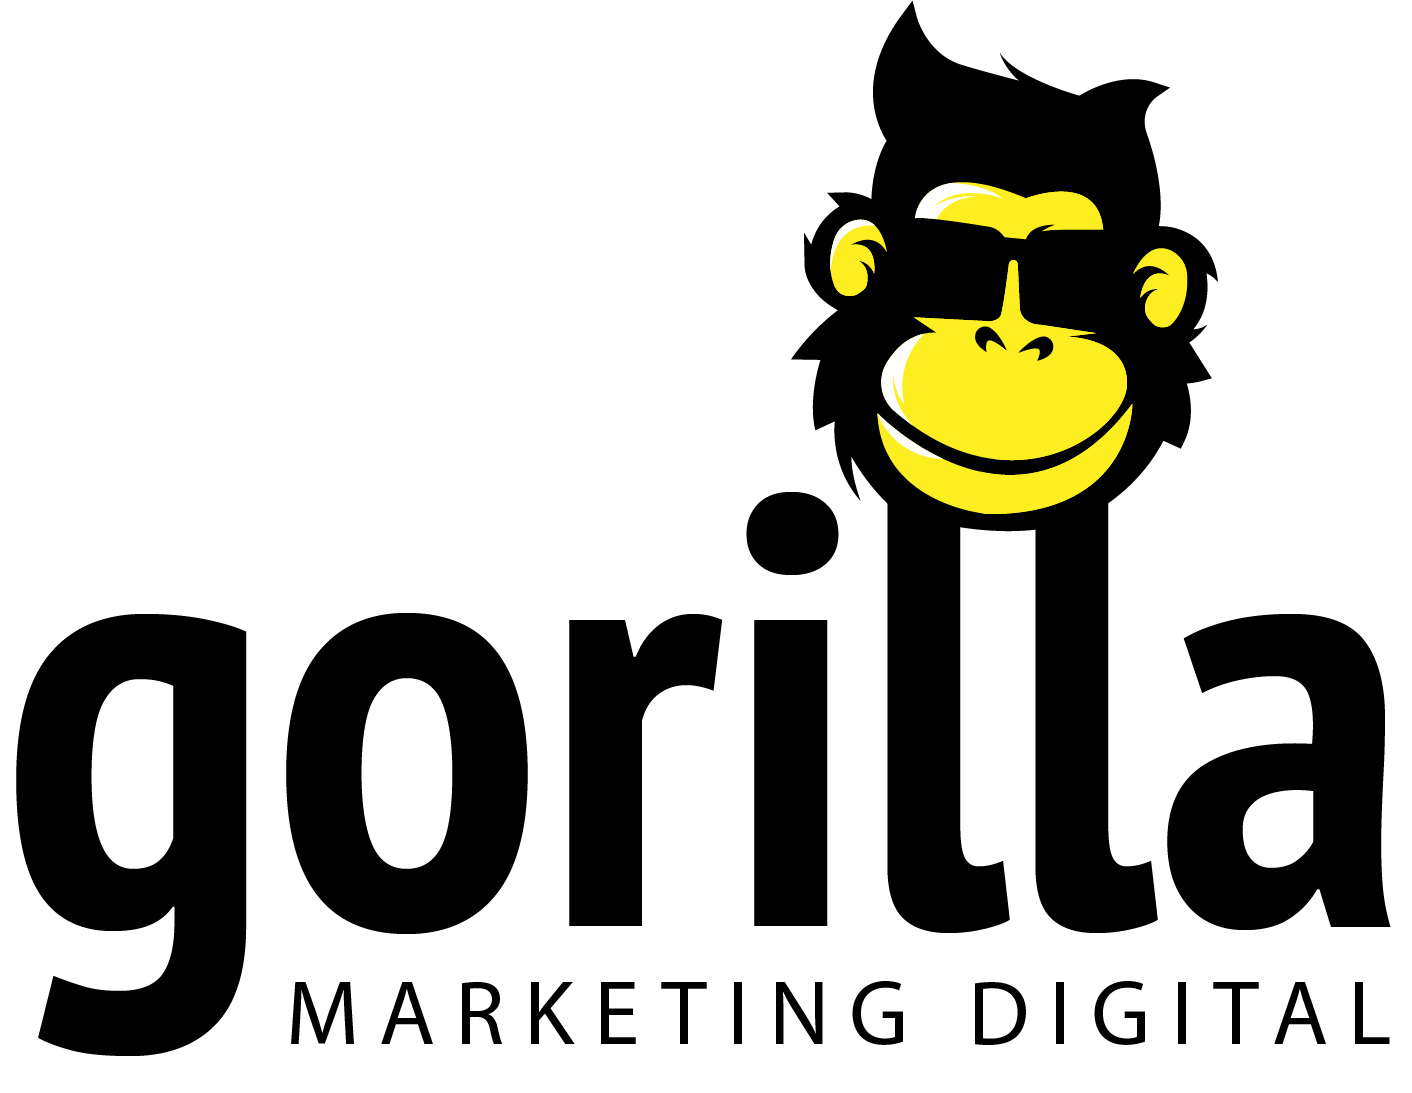 Gorilla 